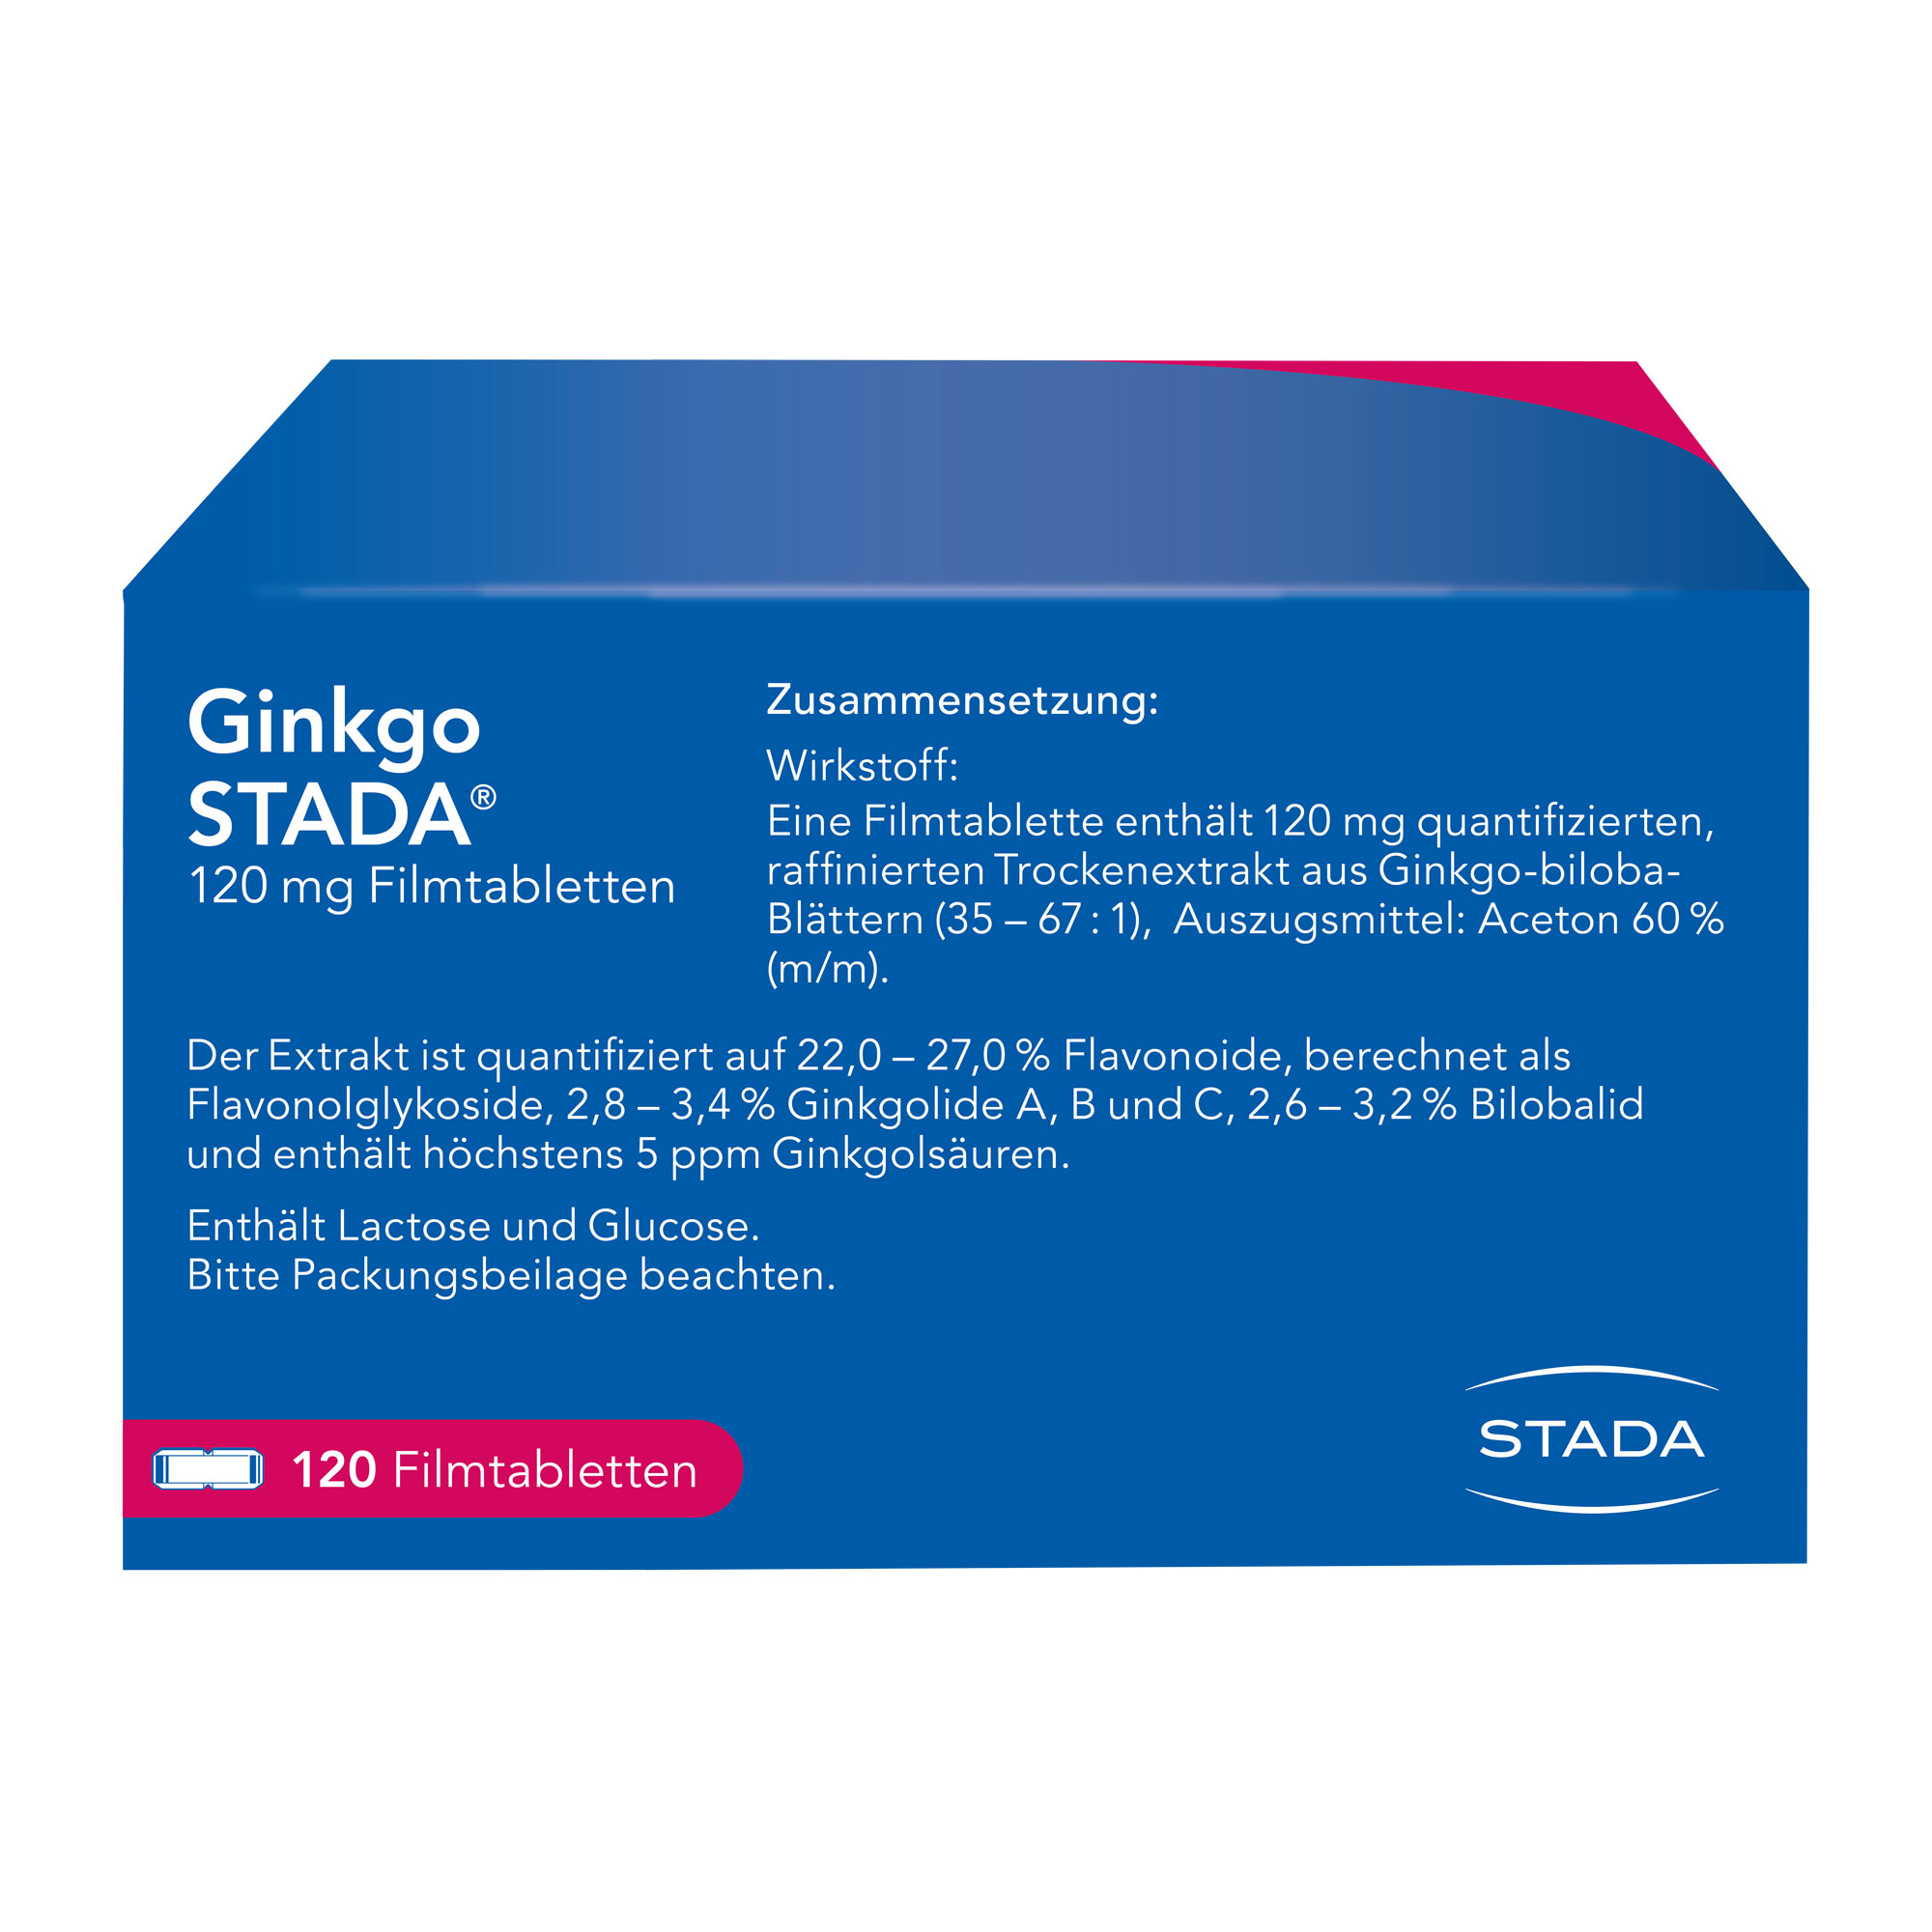 Ginkgo STADA 120 mg Filmtabletten Rückseite